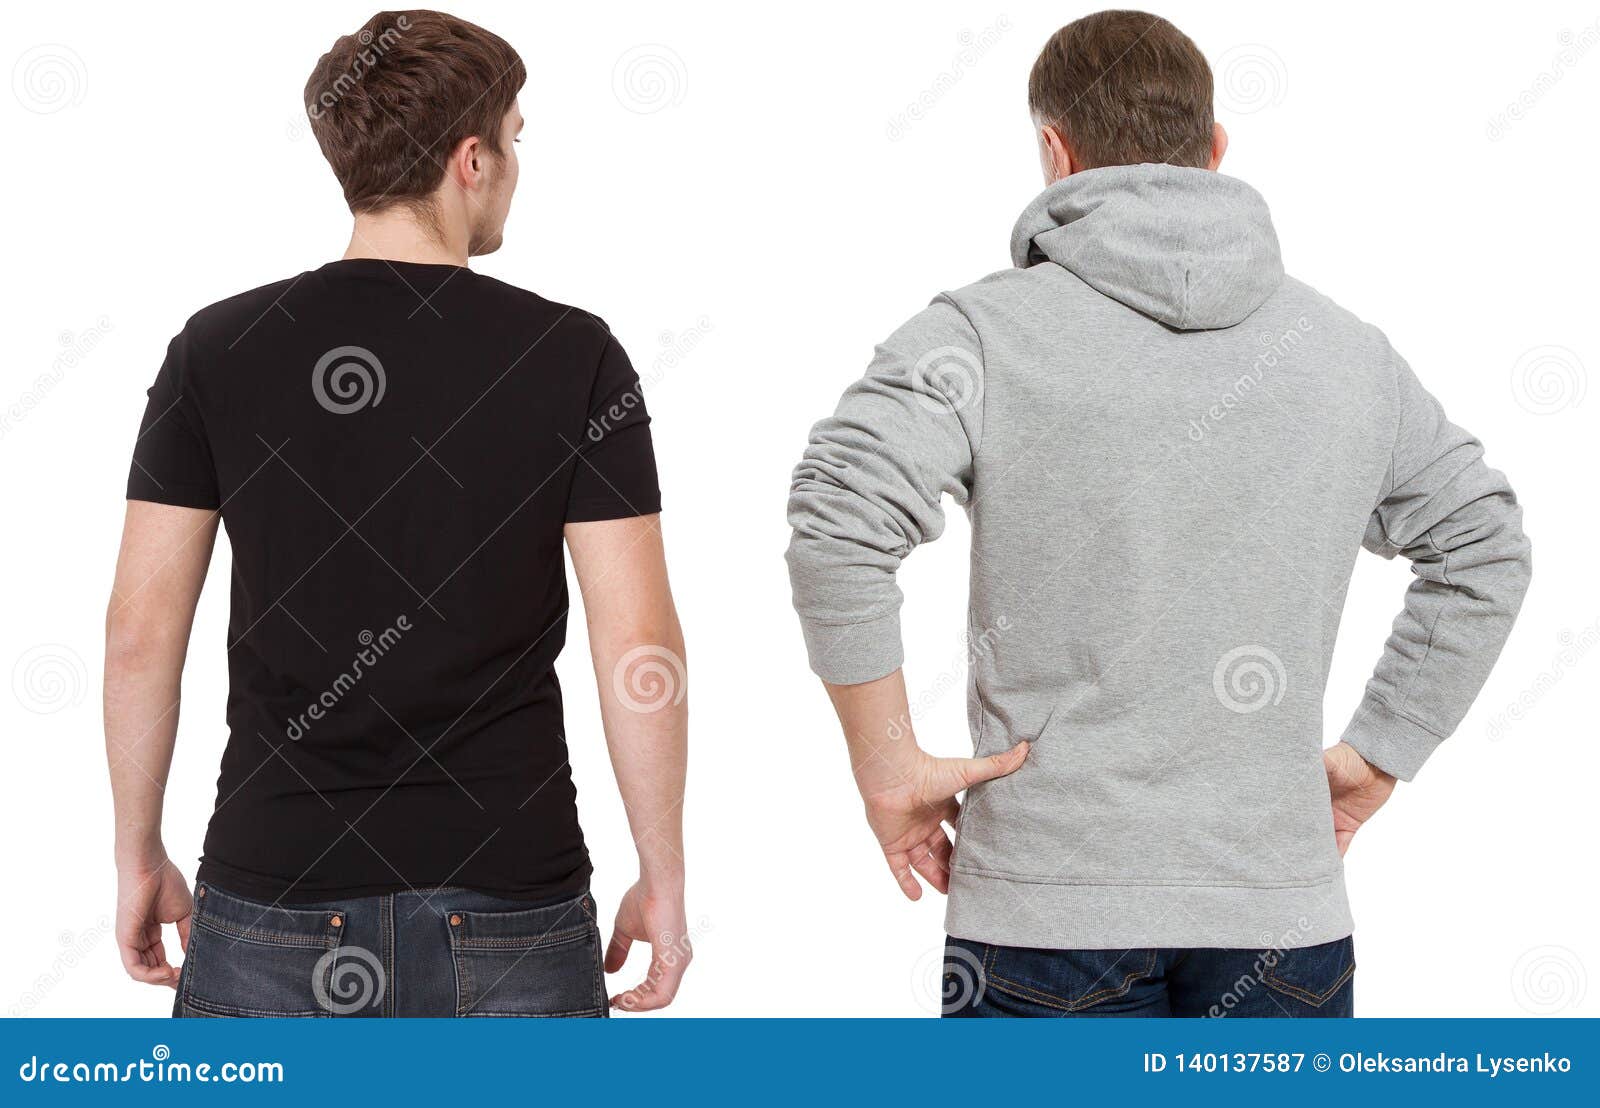 Plantilla de sudadera negra en blanco para un hombre con jeans